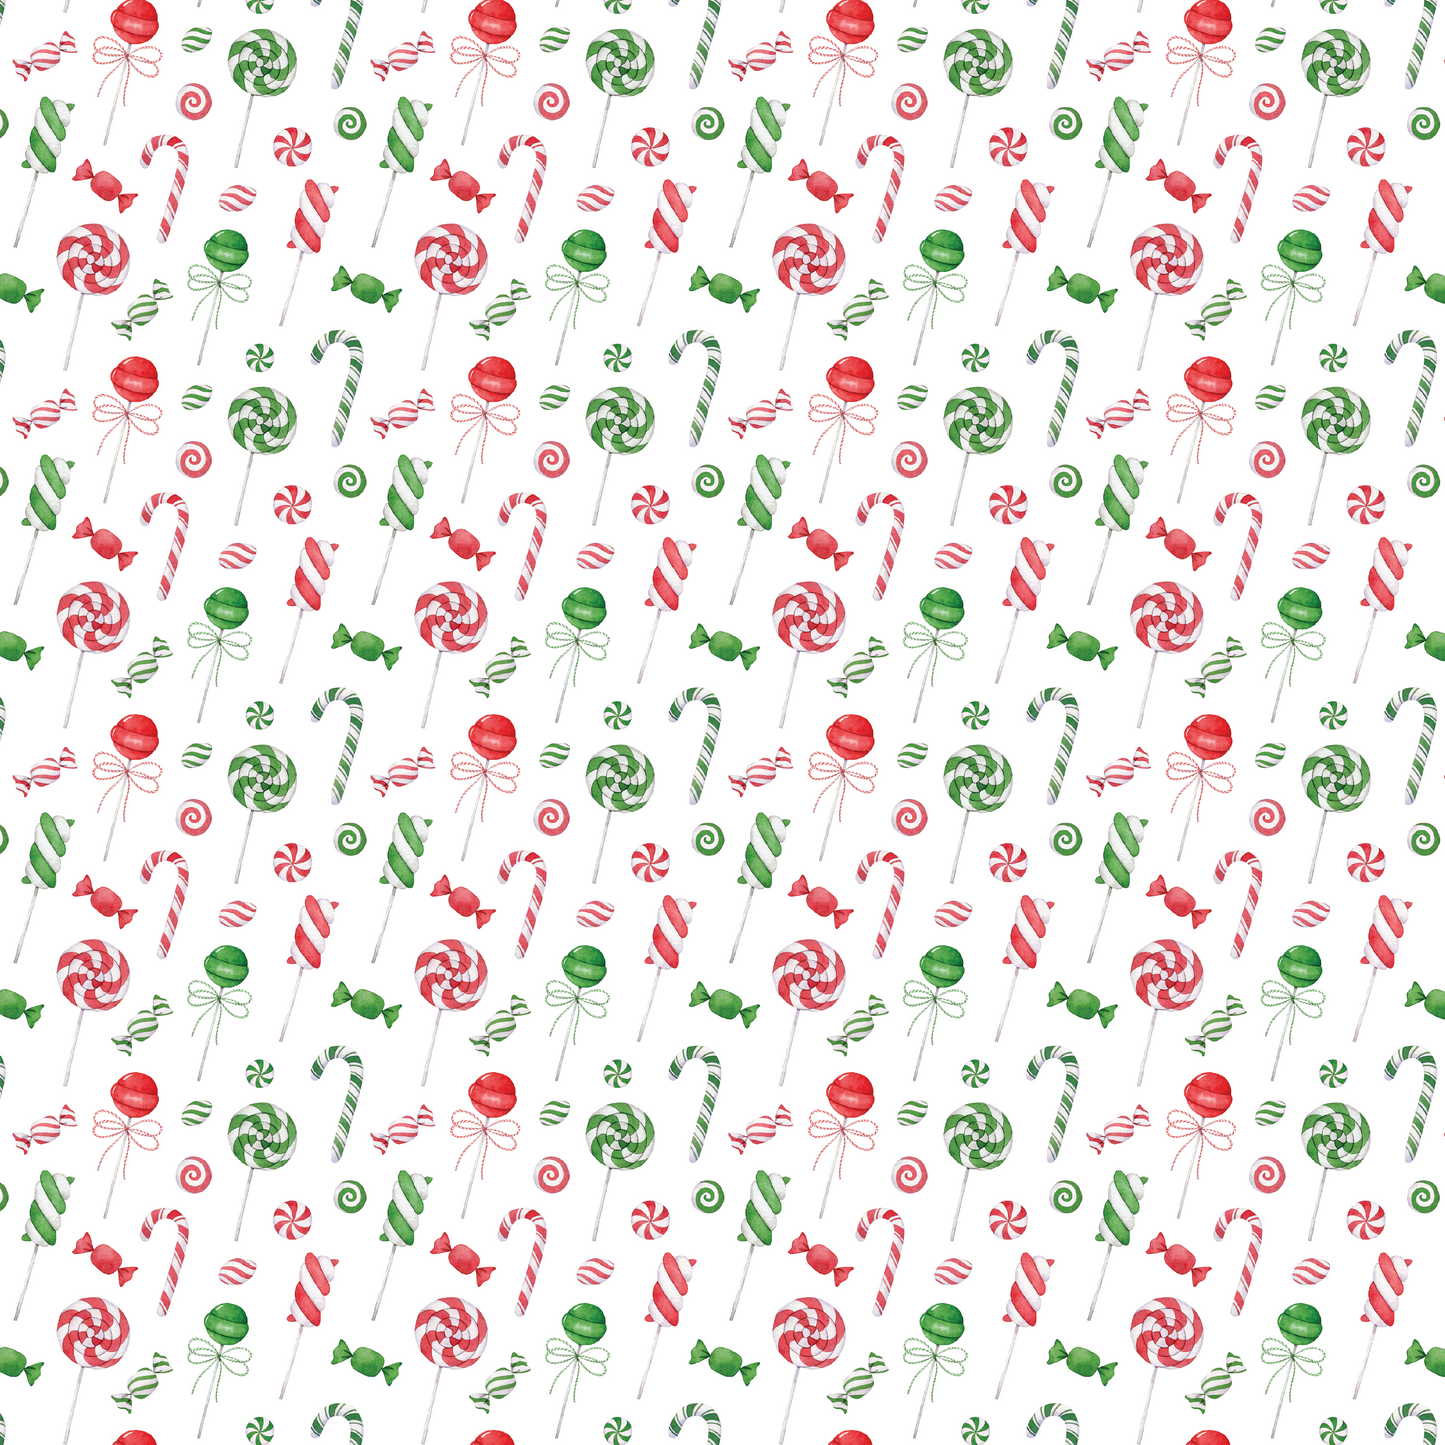 Bonbons de Noël - Bonbons à la menthe poivrée verte et rouge 006